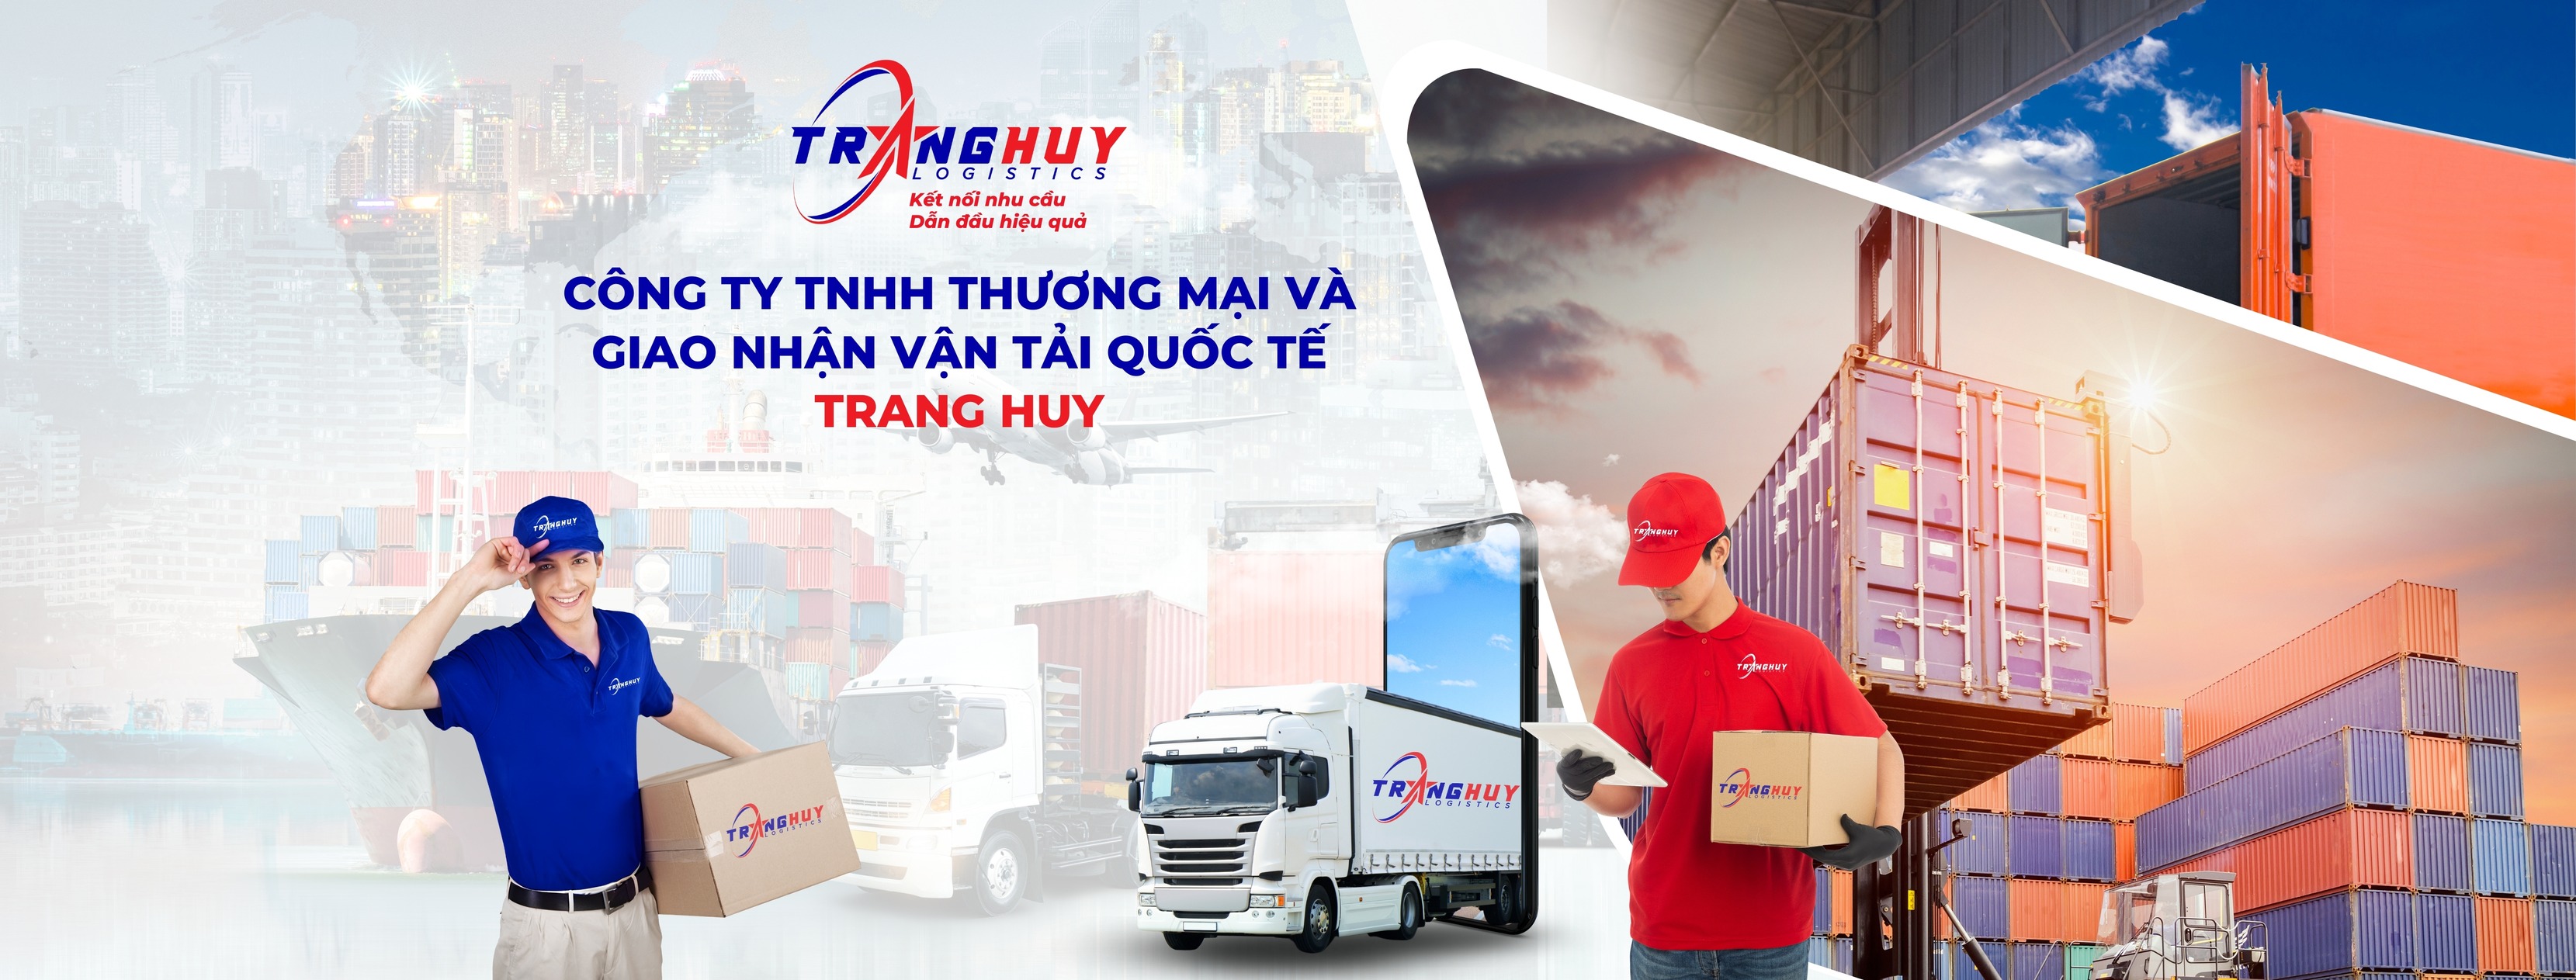 Cover image for Thương mại và giao nhận vận tải quốc tế Trang Huy